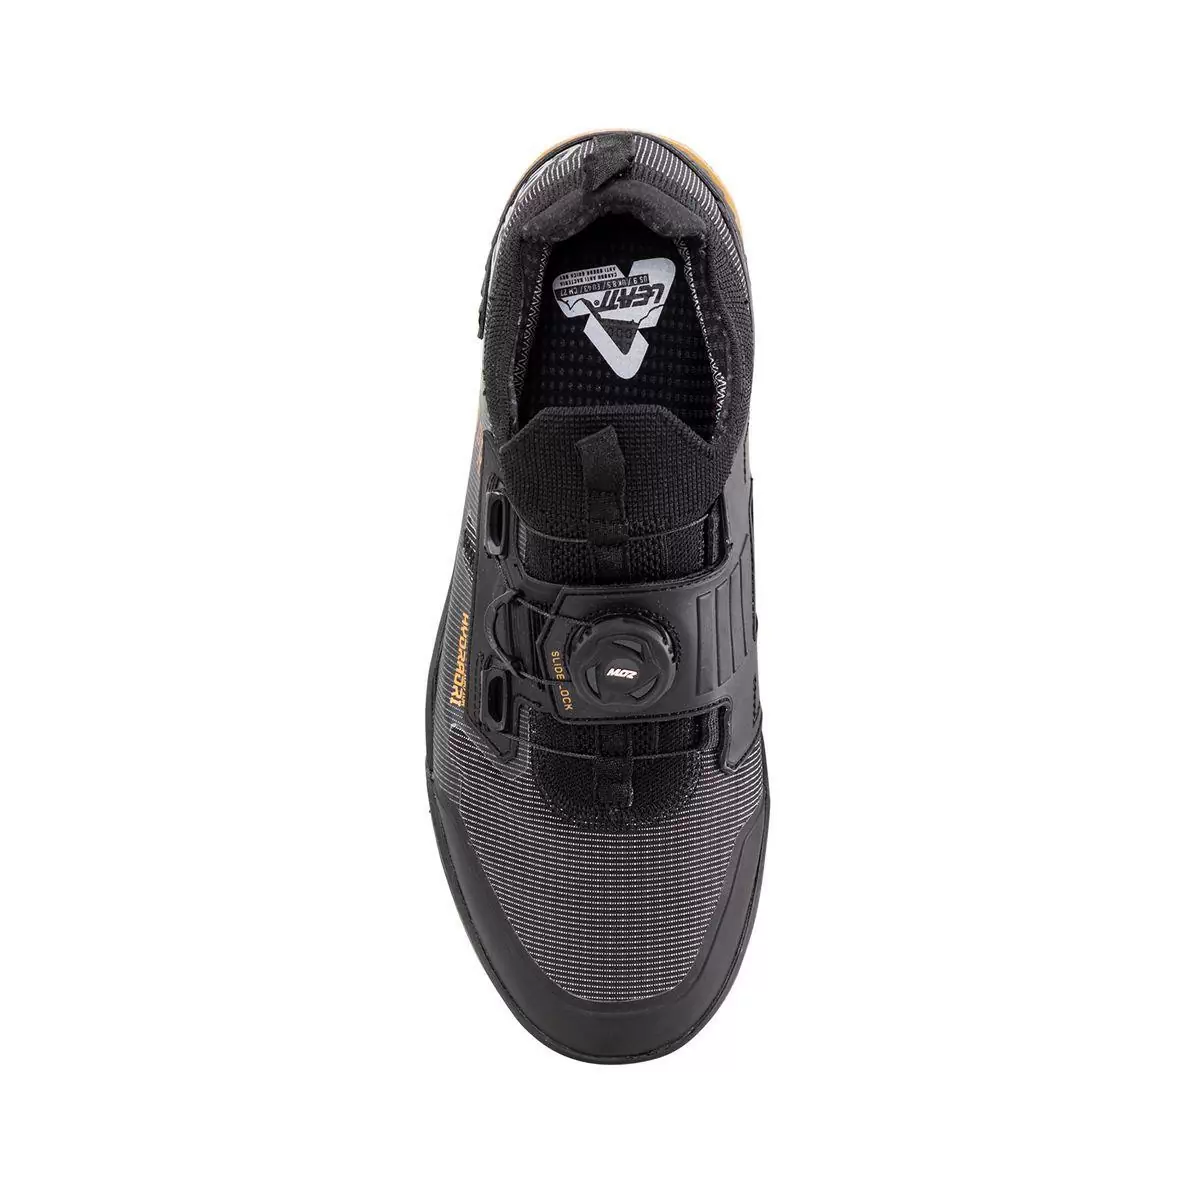 Chaussures VTT imperméables HydraDri ProClip 5.0 noir taille 44.5 #2